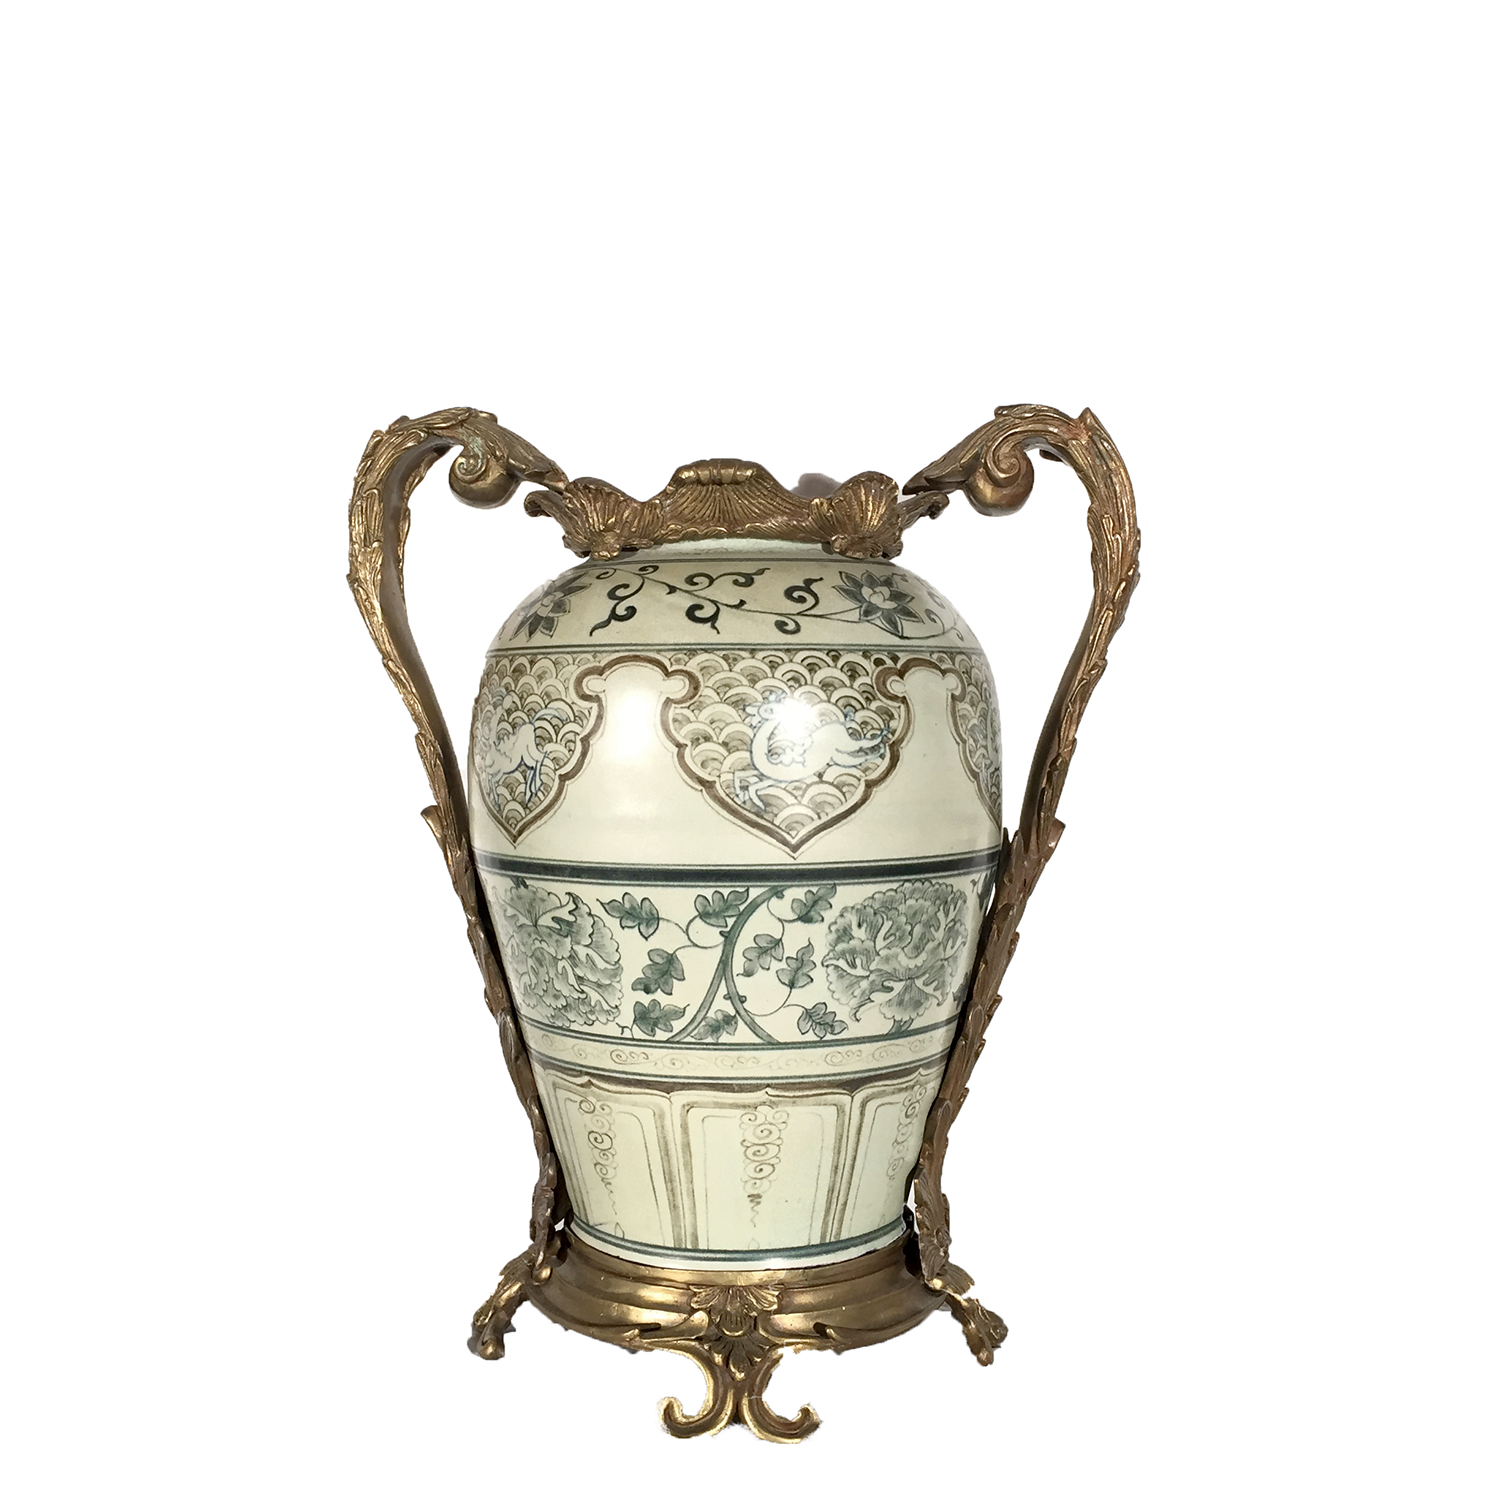 Cast Bronze Handles & Base holding Porcelain Vase